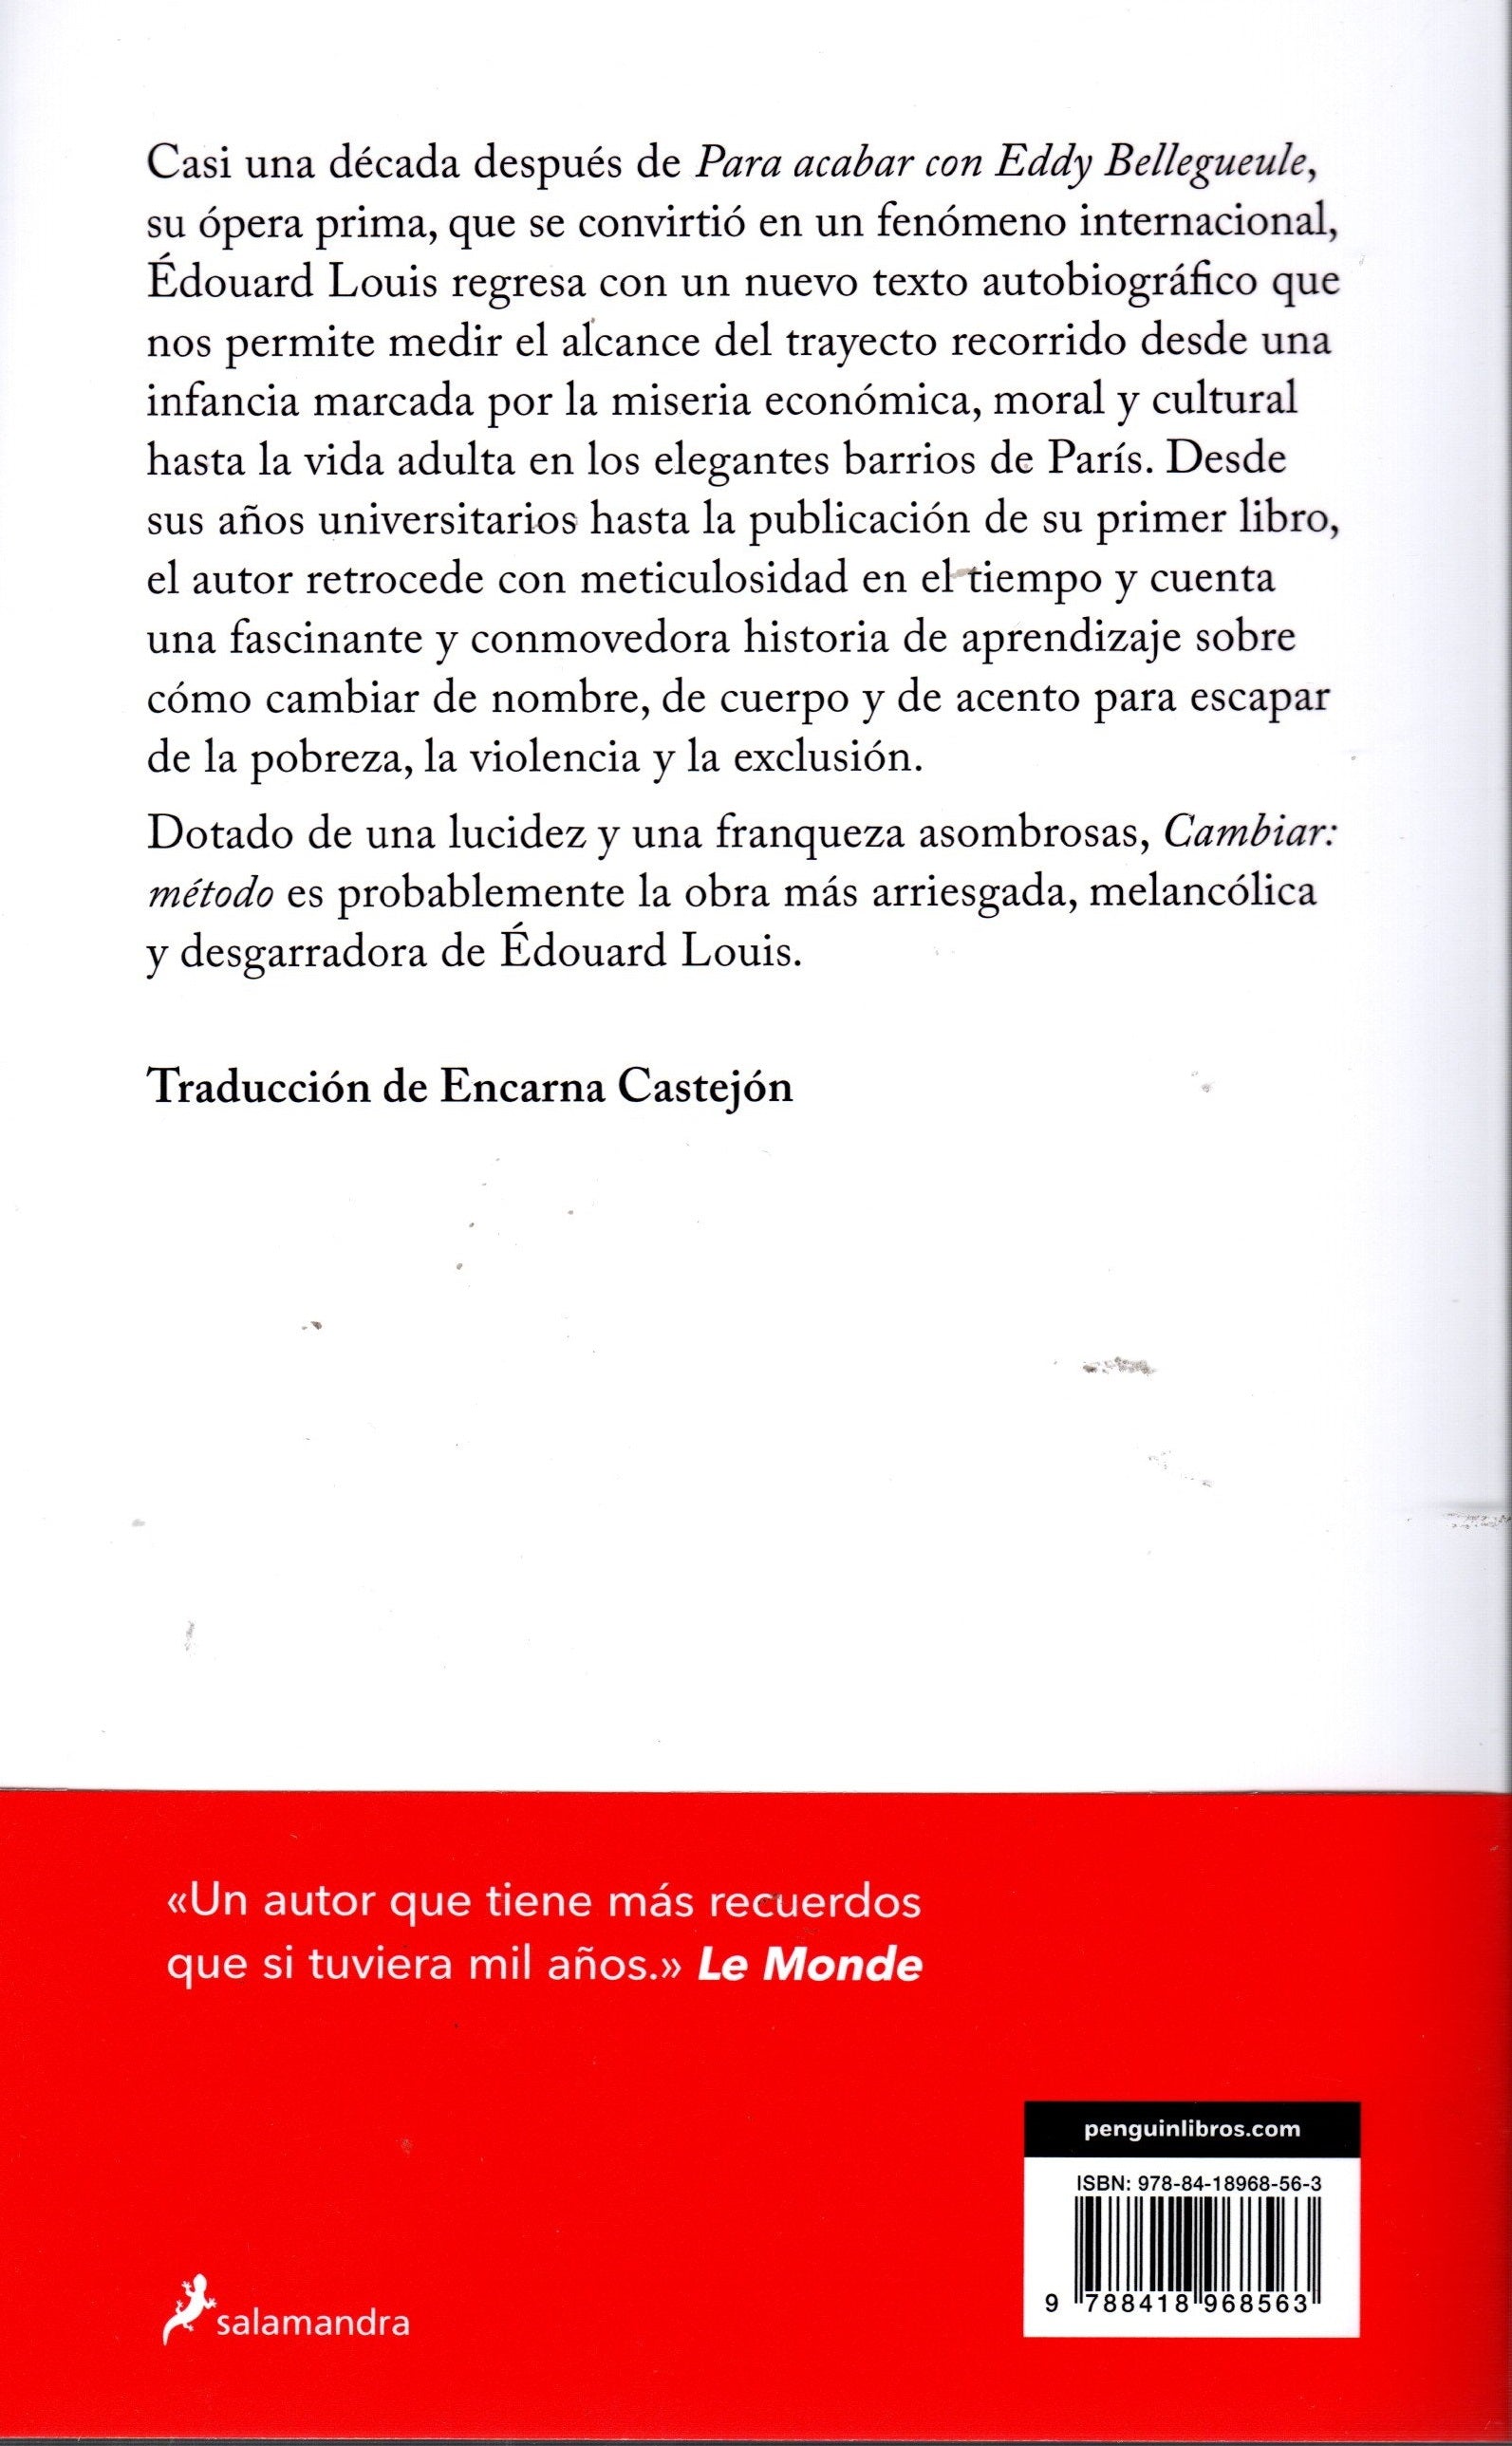 Libro Édouard Louis - Cambiar: Método